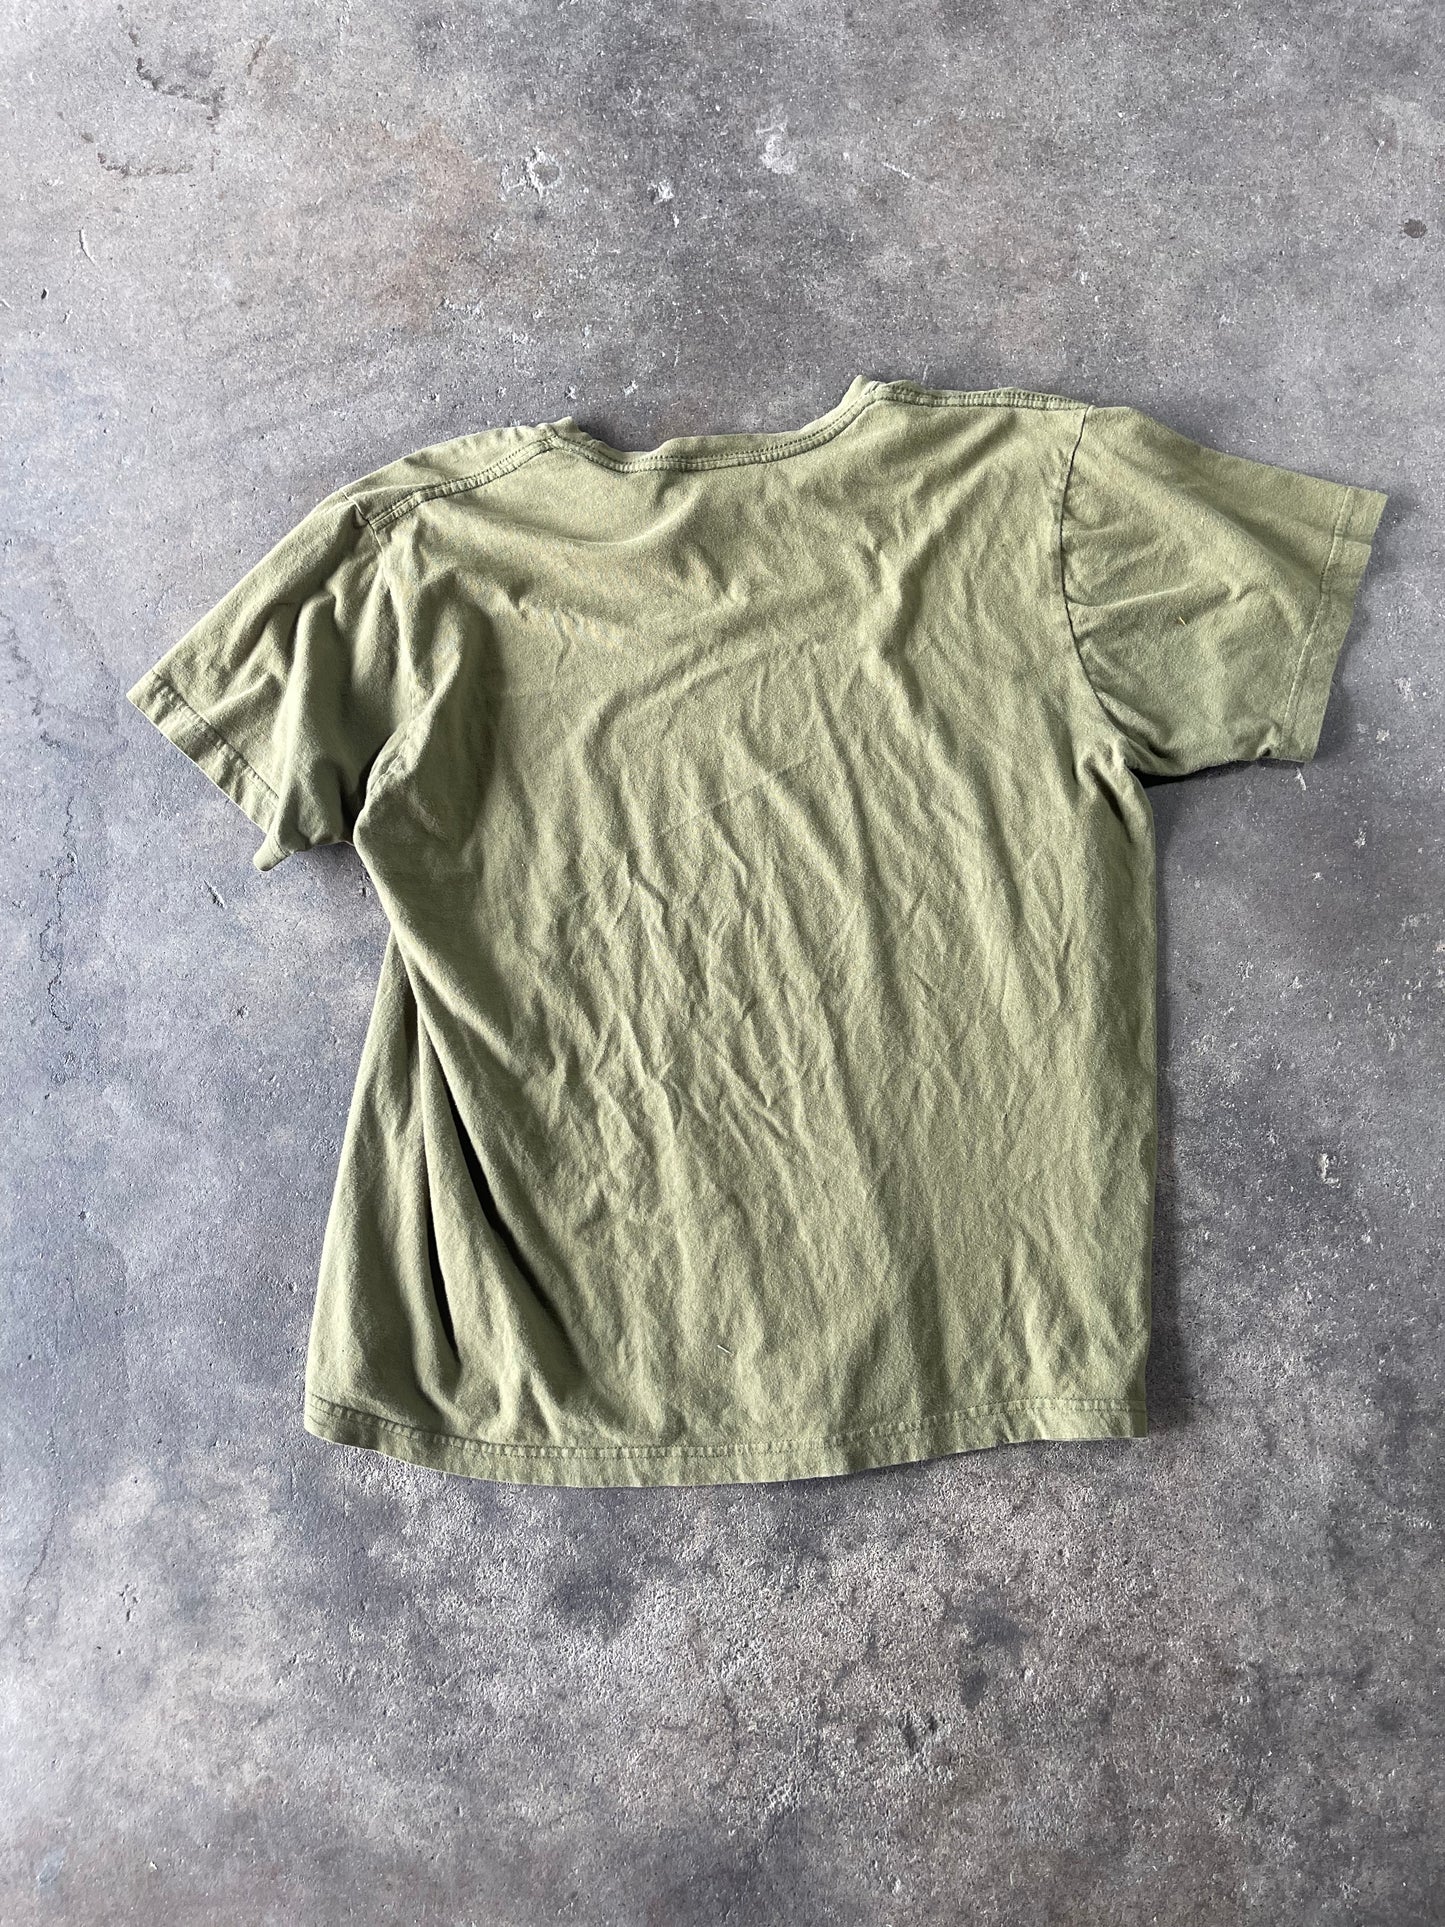 Green Fender Shirt XL